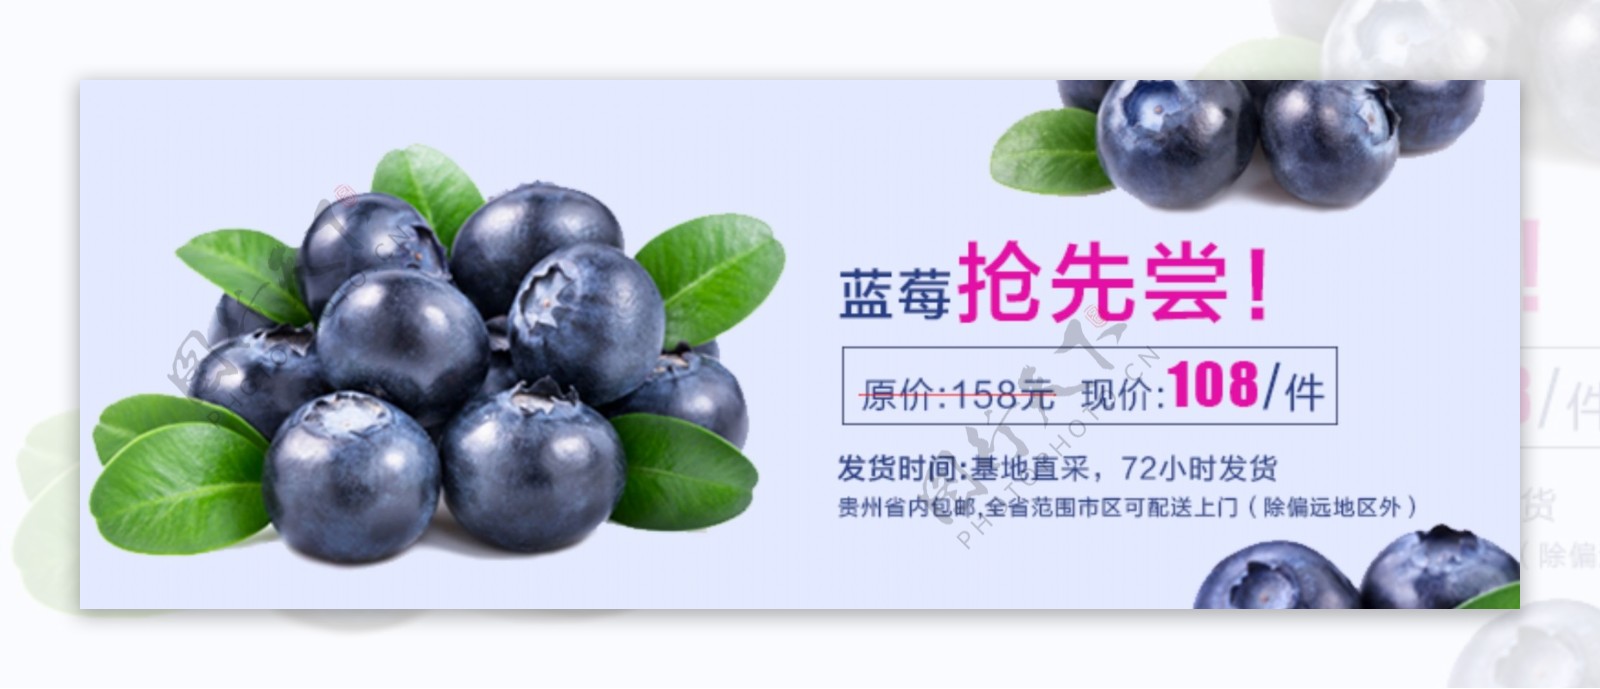 蓝莓预售海报